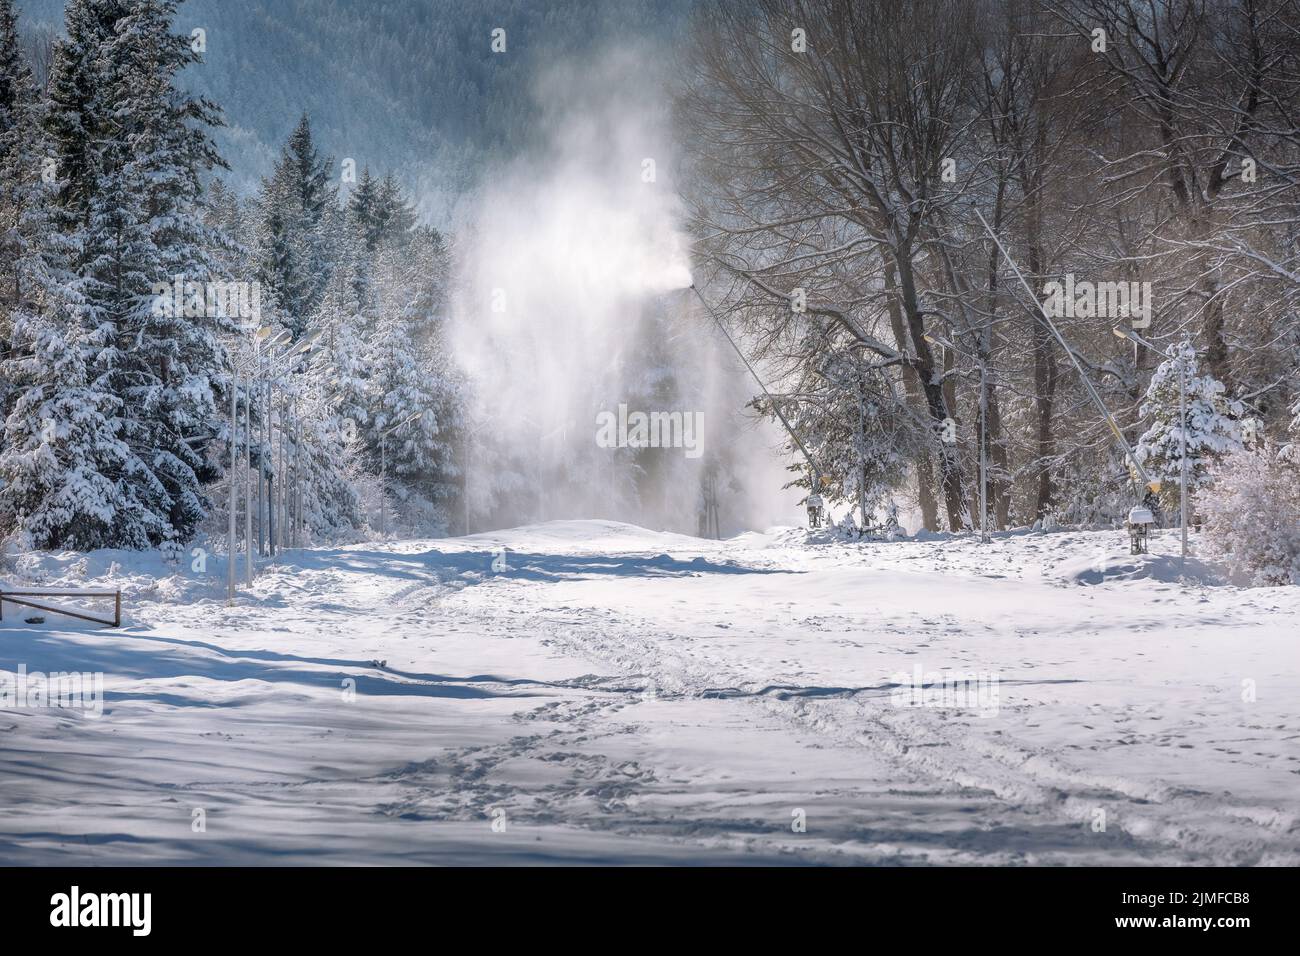 Station de ski Bansko, Bulgarie, canons à neige Banque D'Images